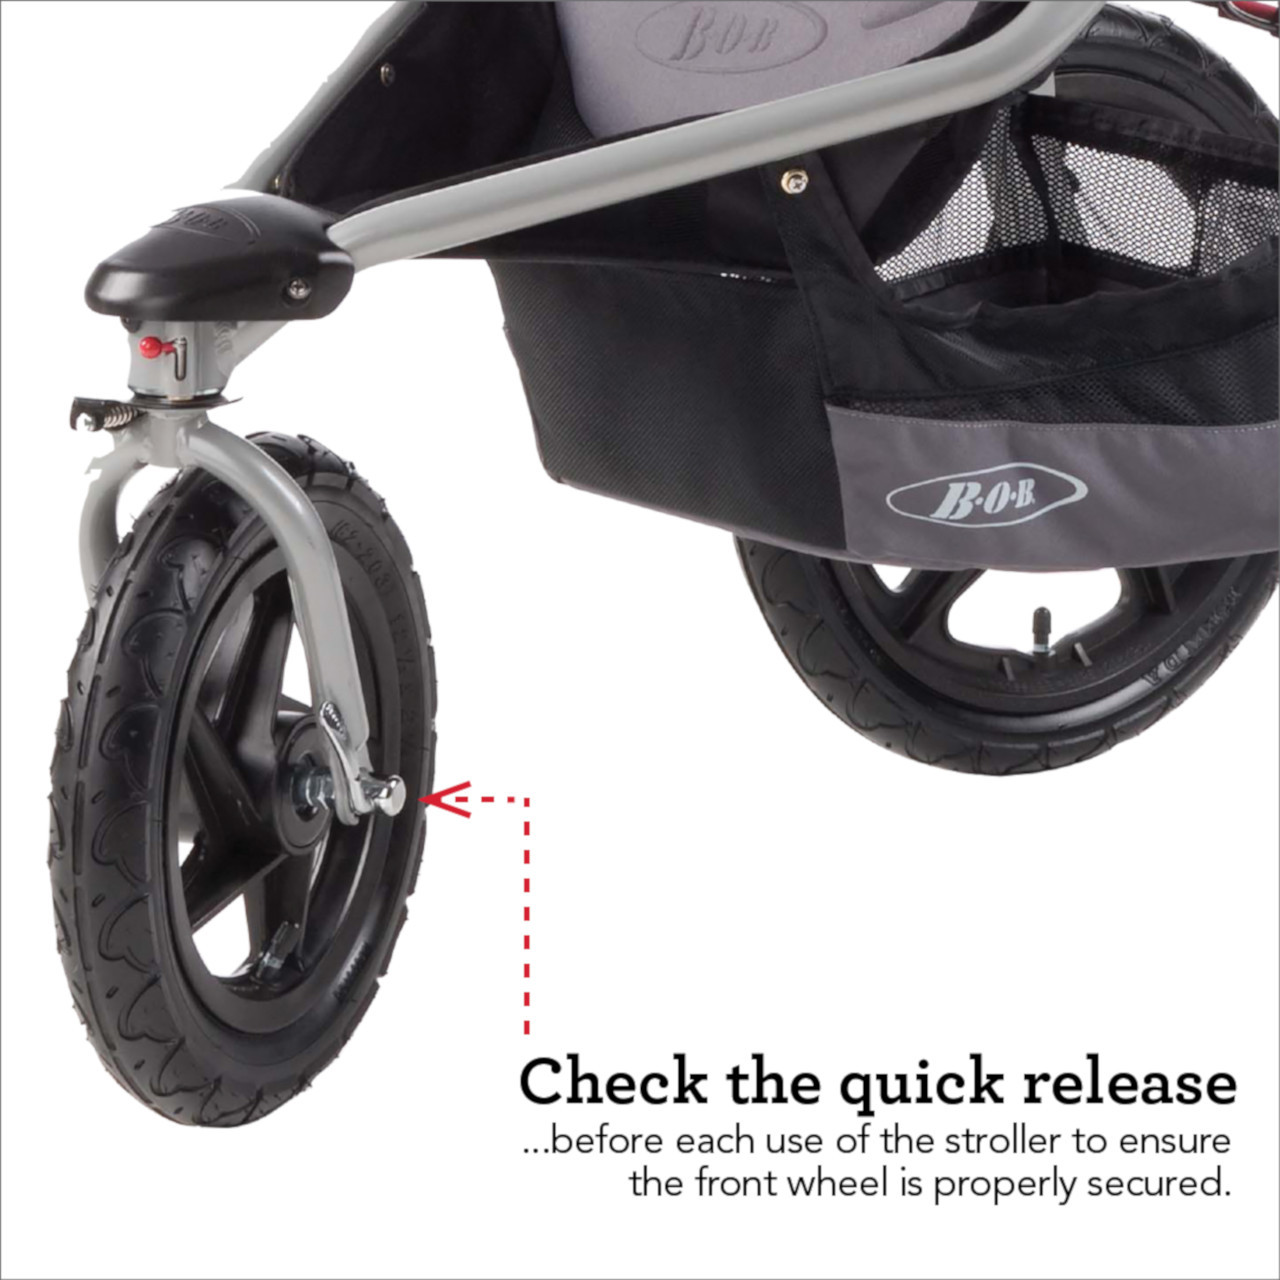 bob double stroller swivel front wheel